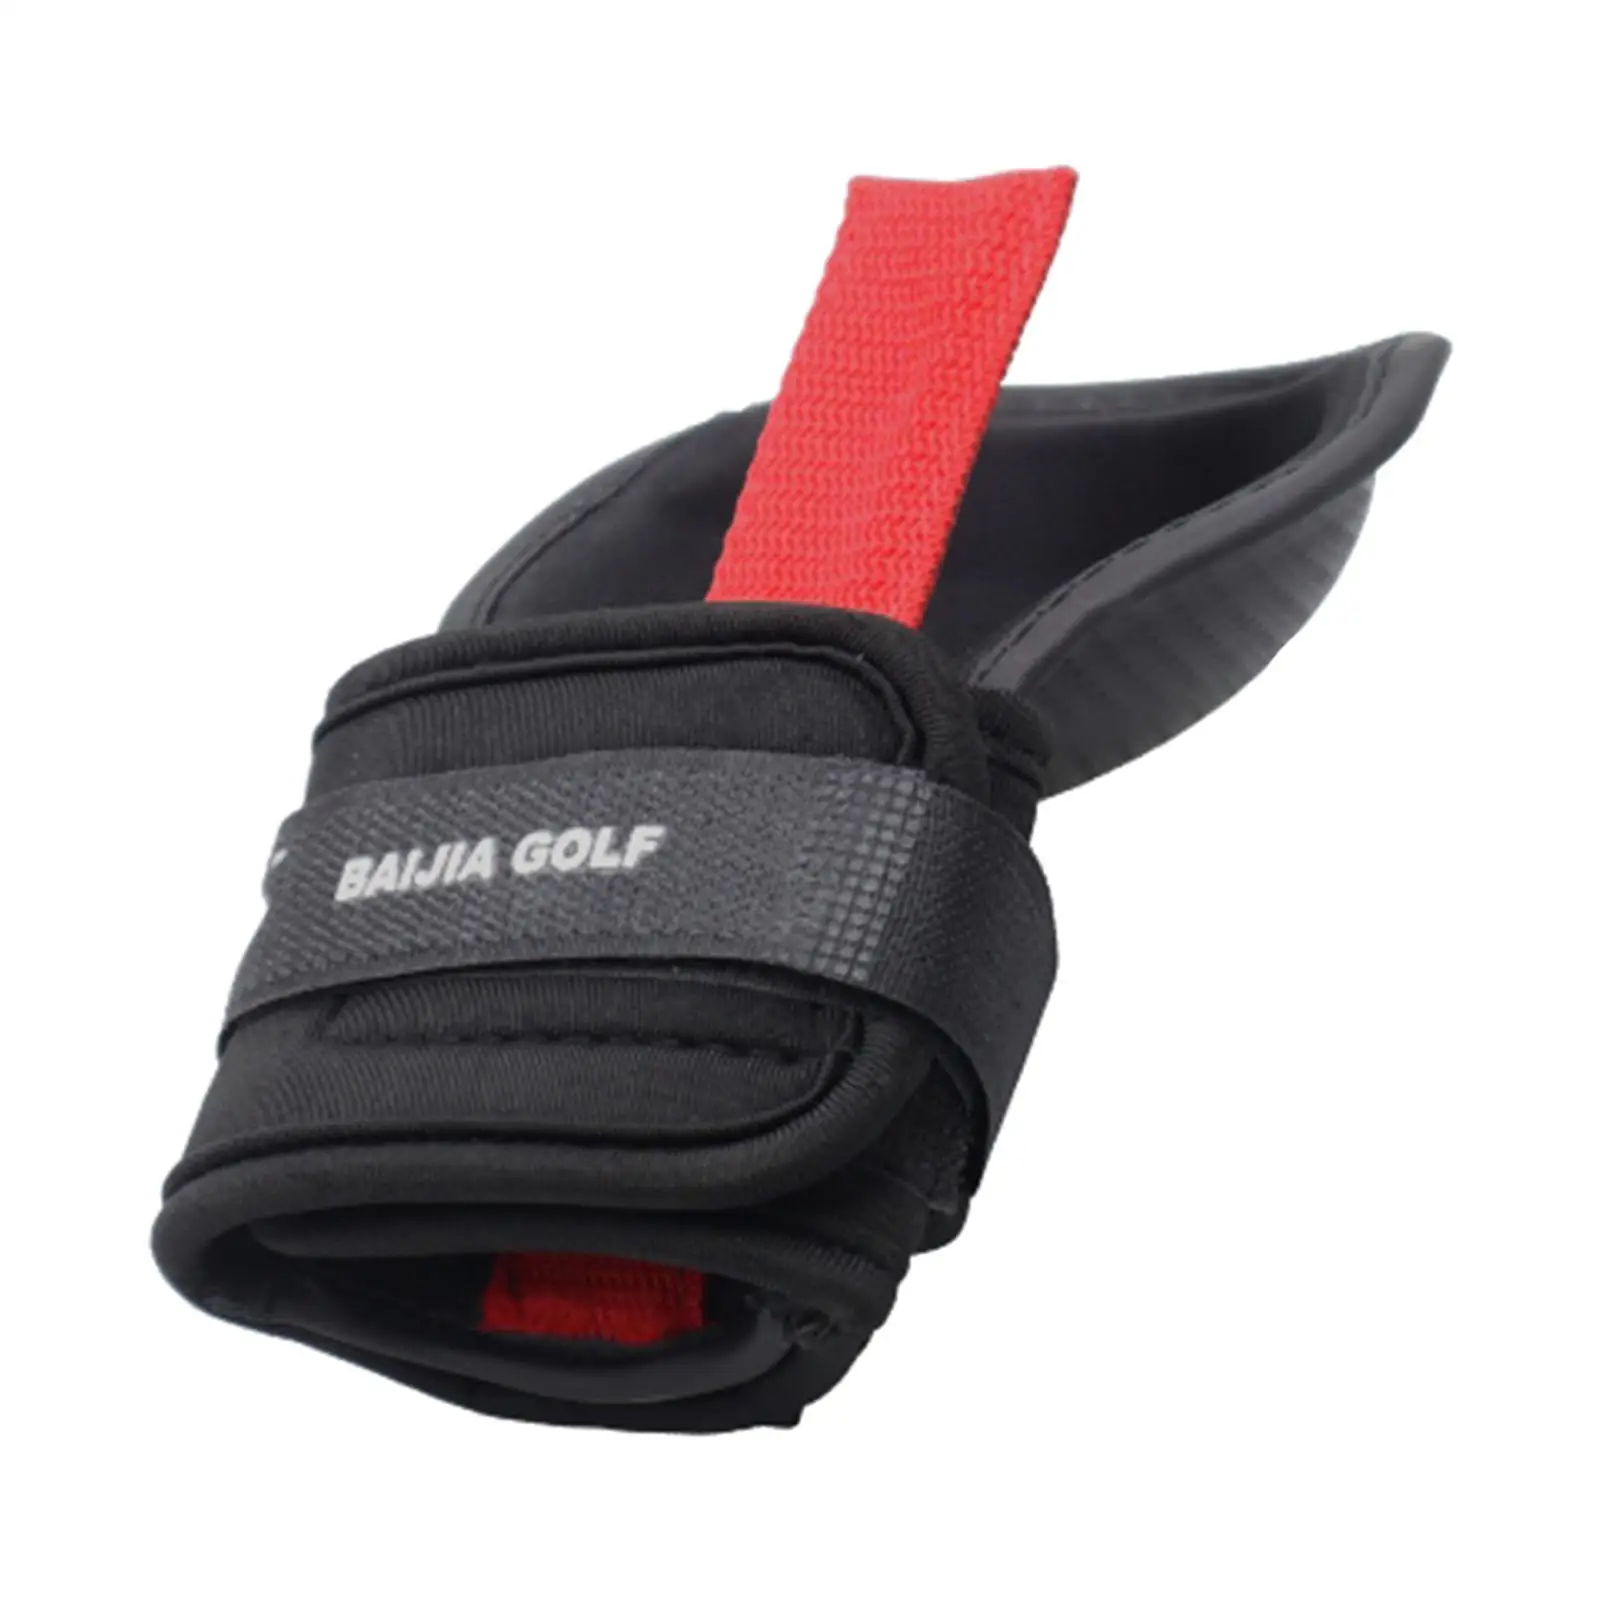 

Golf Swing Trainer Wrist Band Golf Supplies for Beginners Men Women Golfers